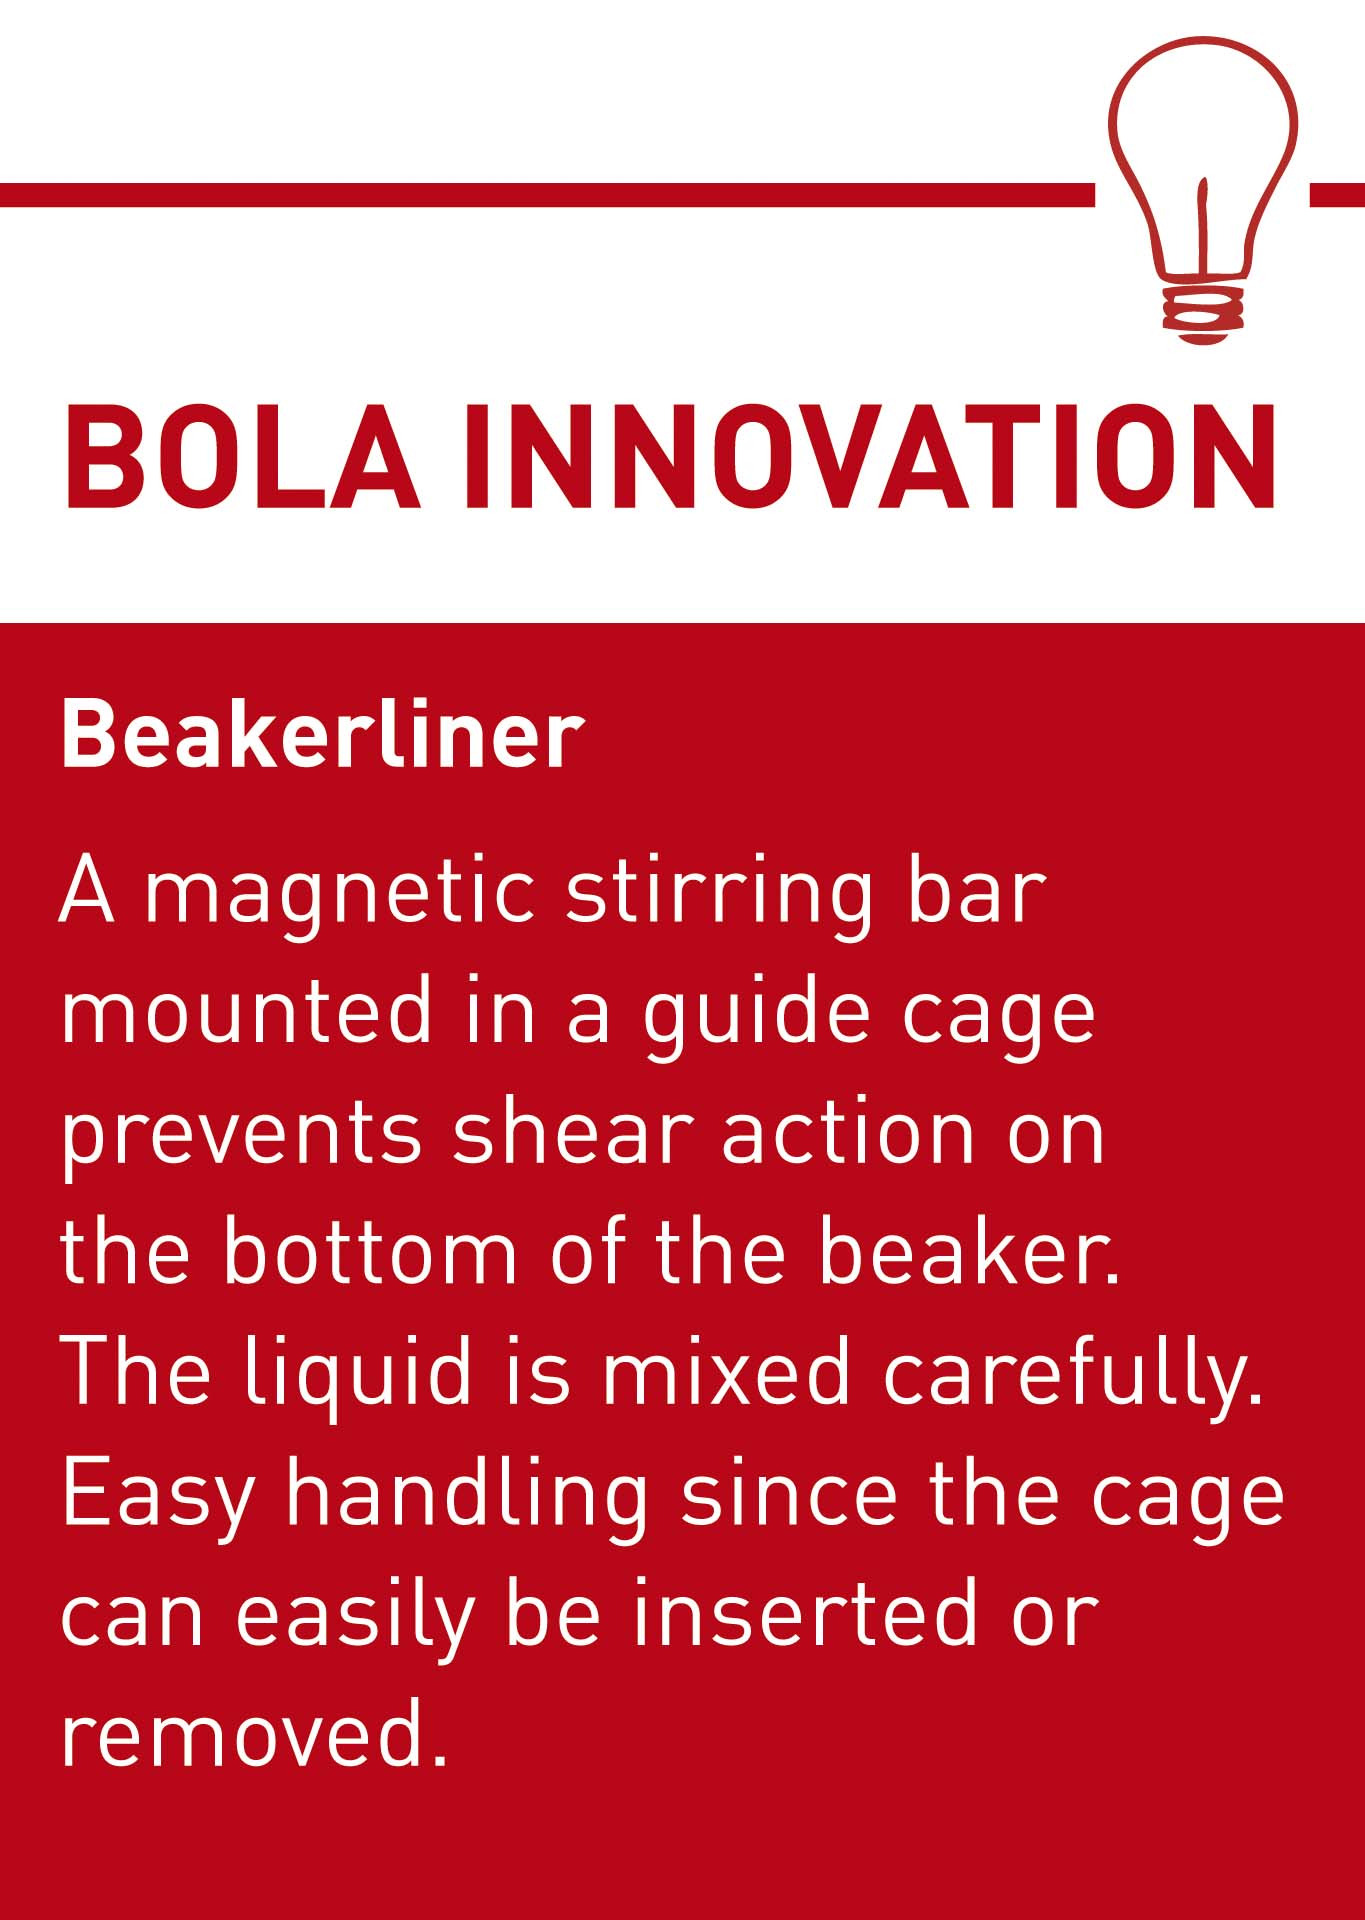 BOLA Innovation Beakerliner E.jpg